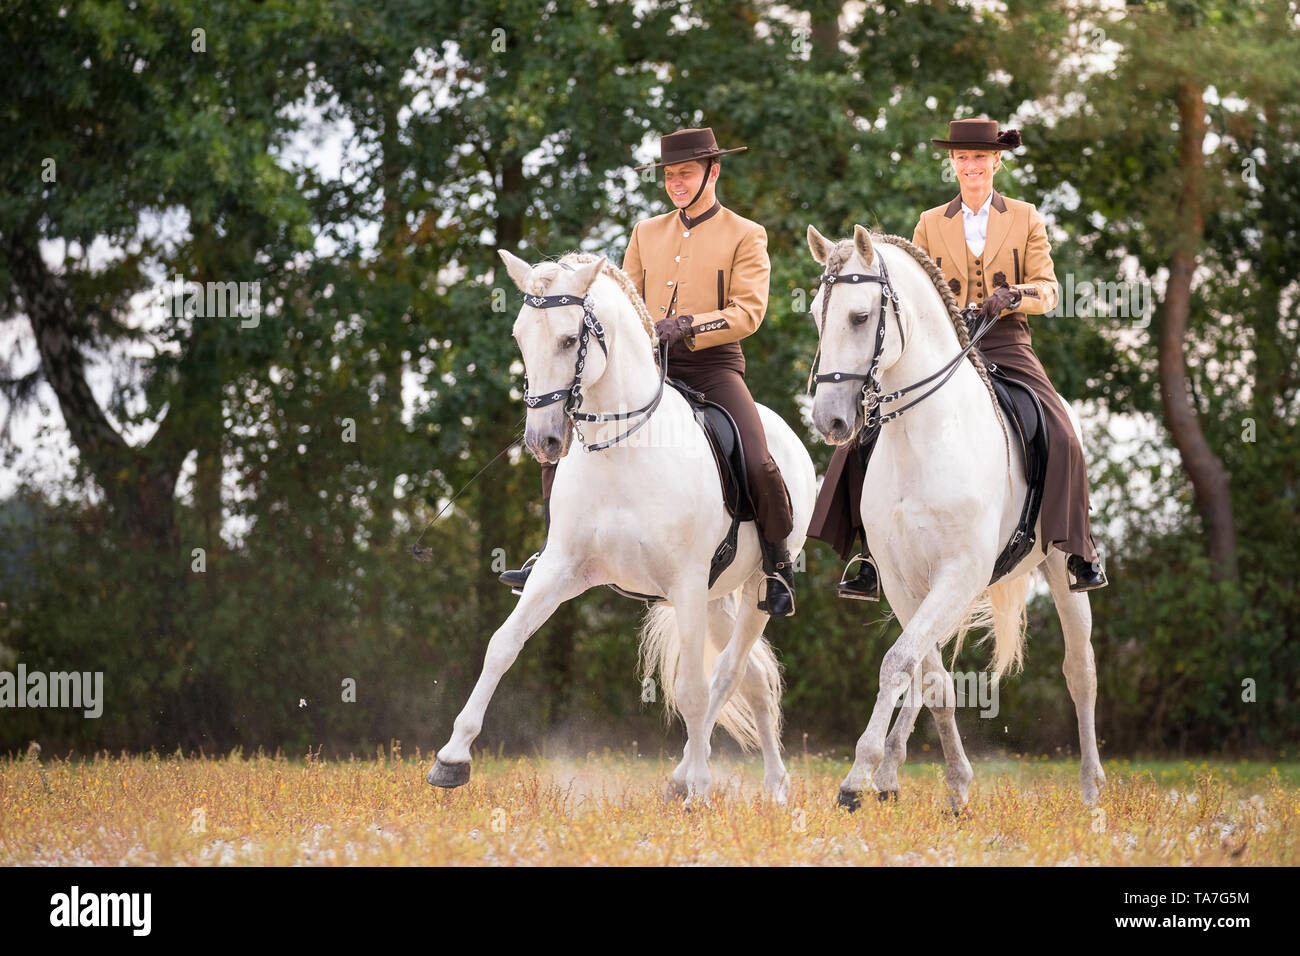 Puro Cavallo Spagnolo, PRE, Cartusian cavalli andalusi. Piloti in abito tradizionale su stalloni grigi eseguendo una mezza-pass nel trotto. Germania Foto Stock